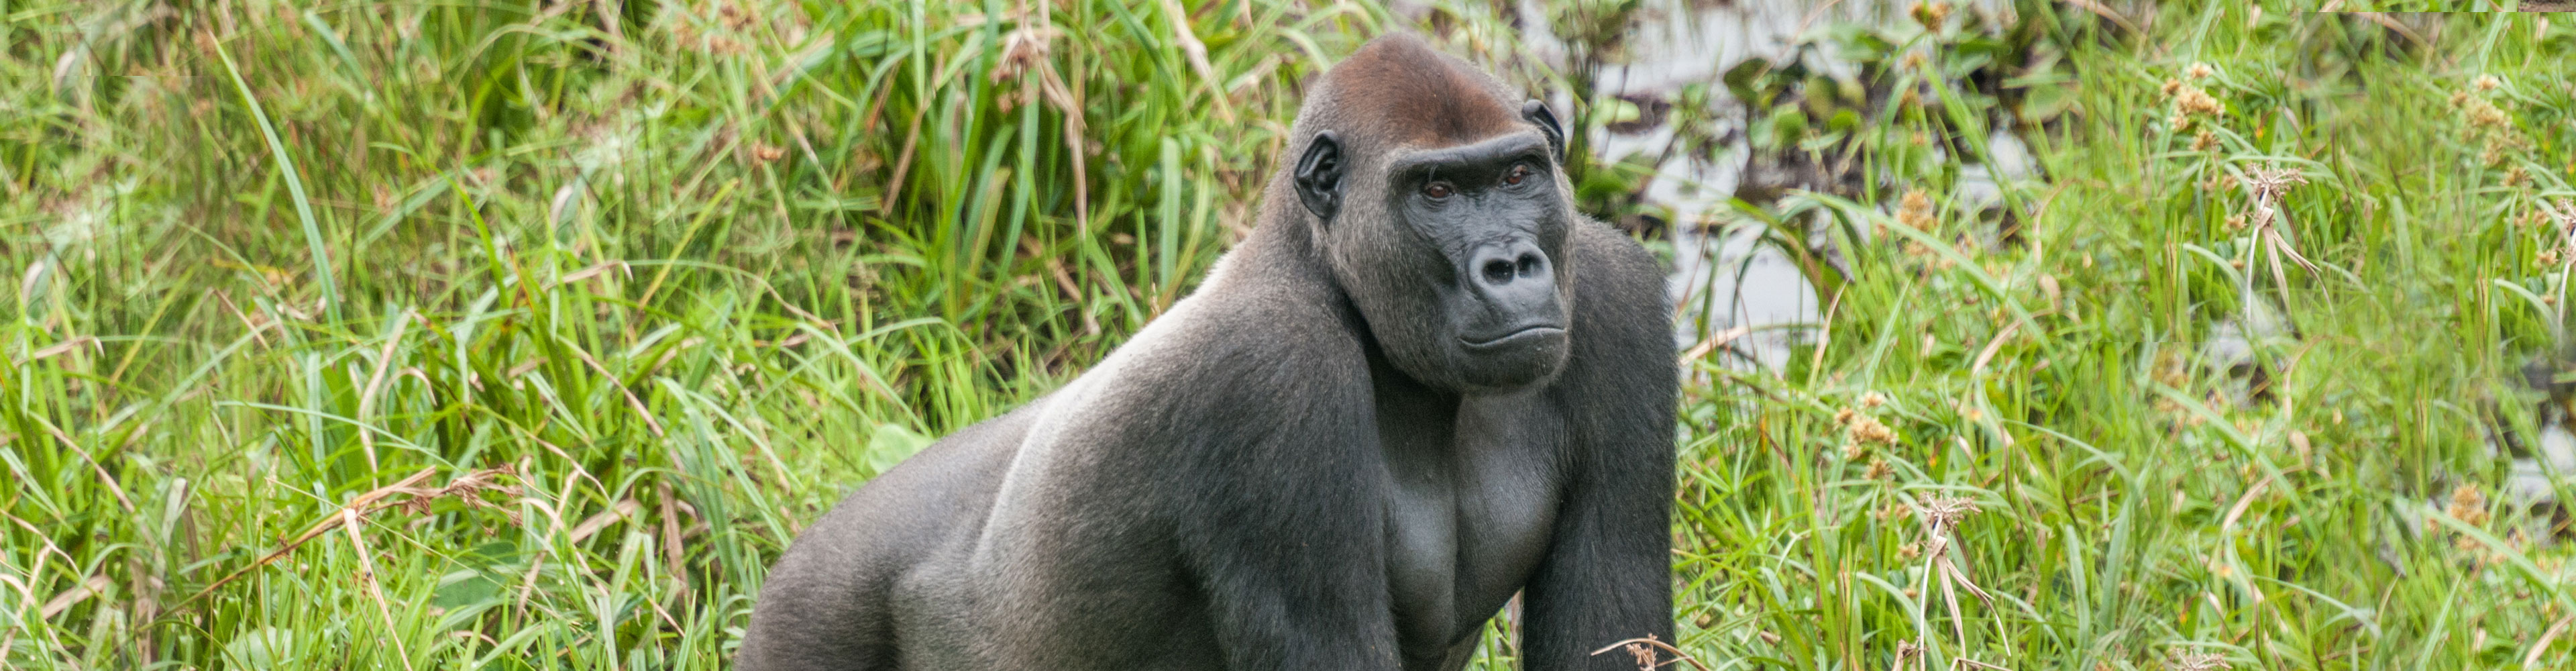 Republic of Congo Expedition - Gorilla Trek 